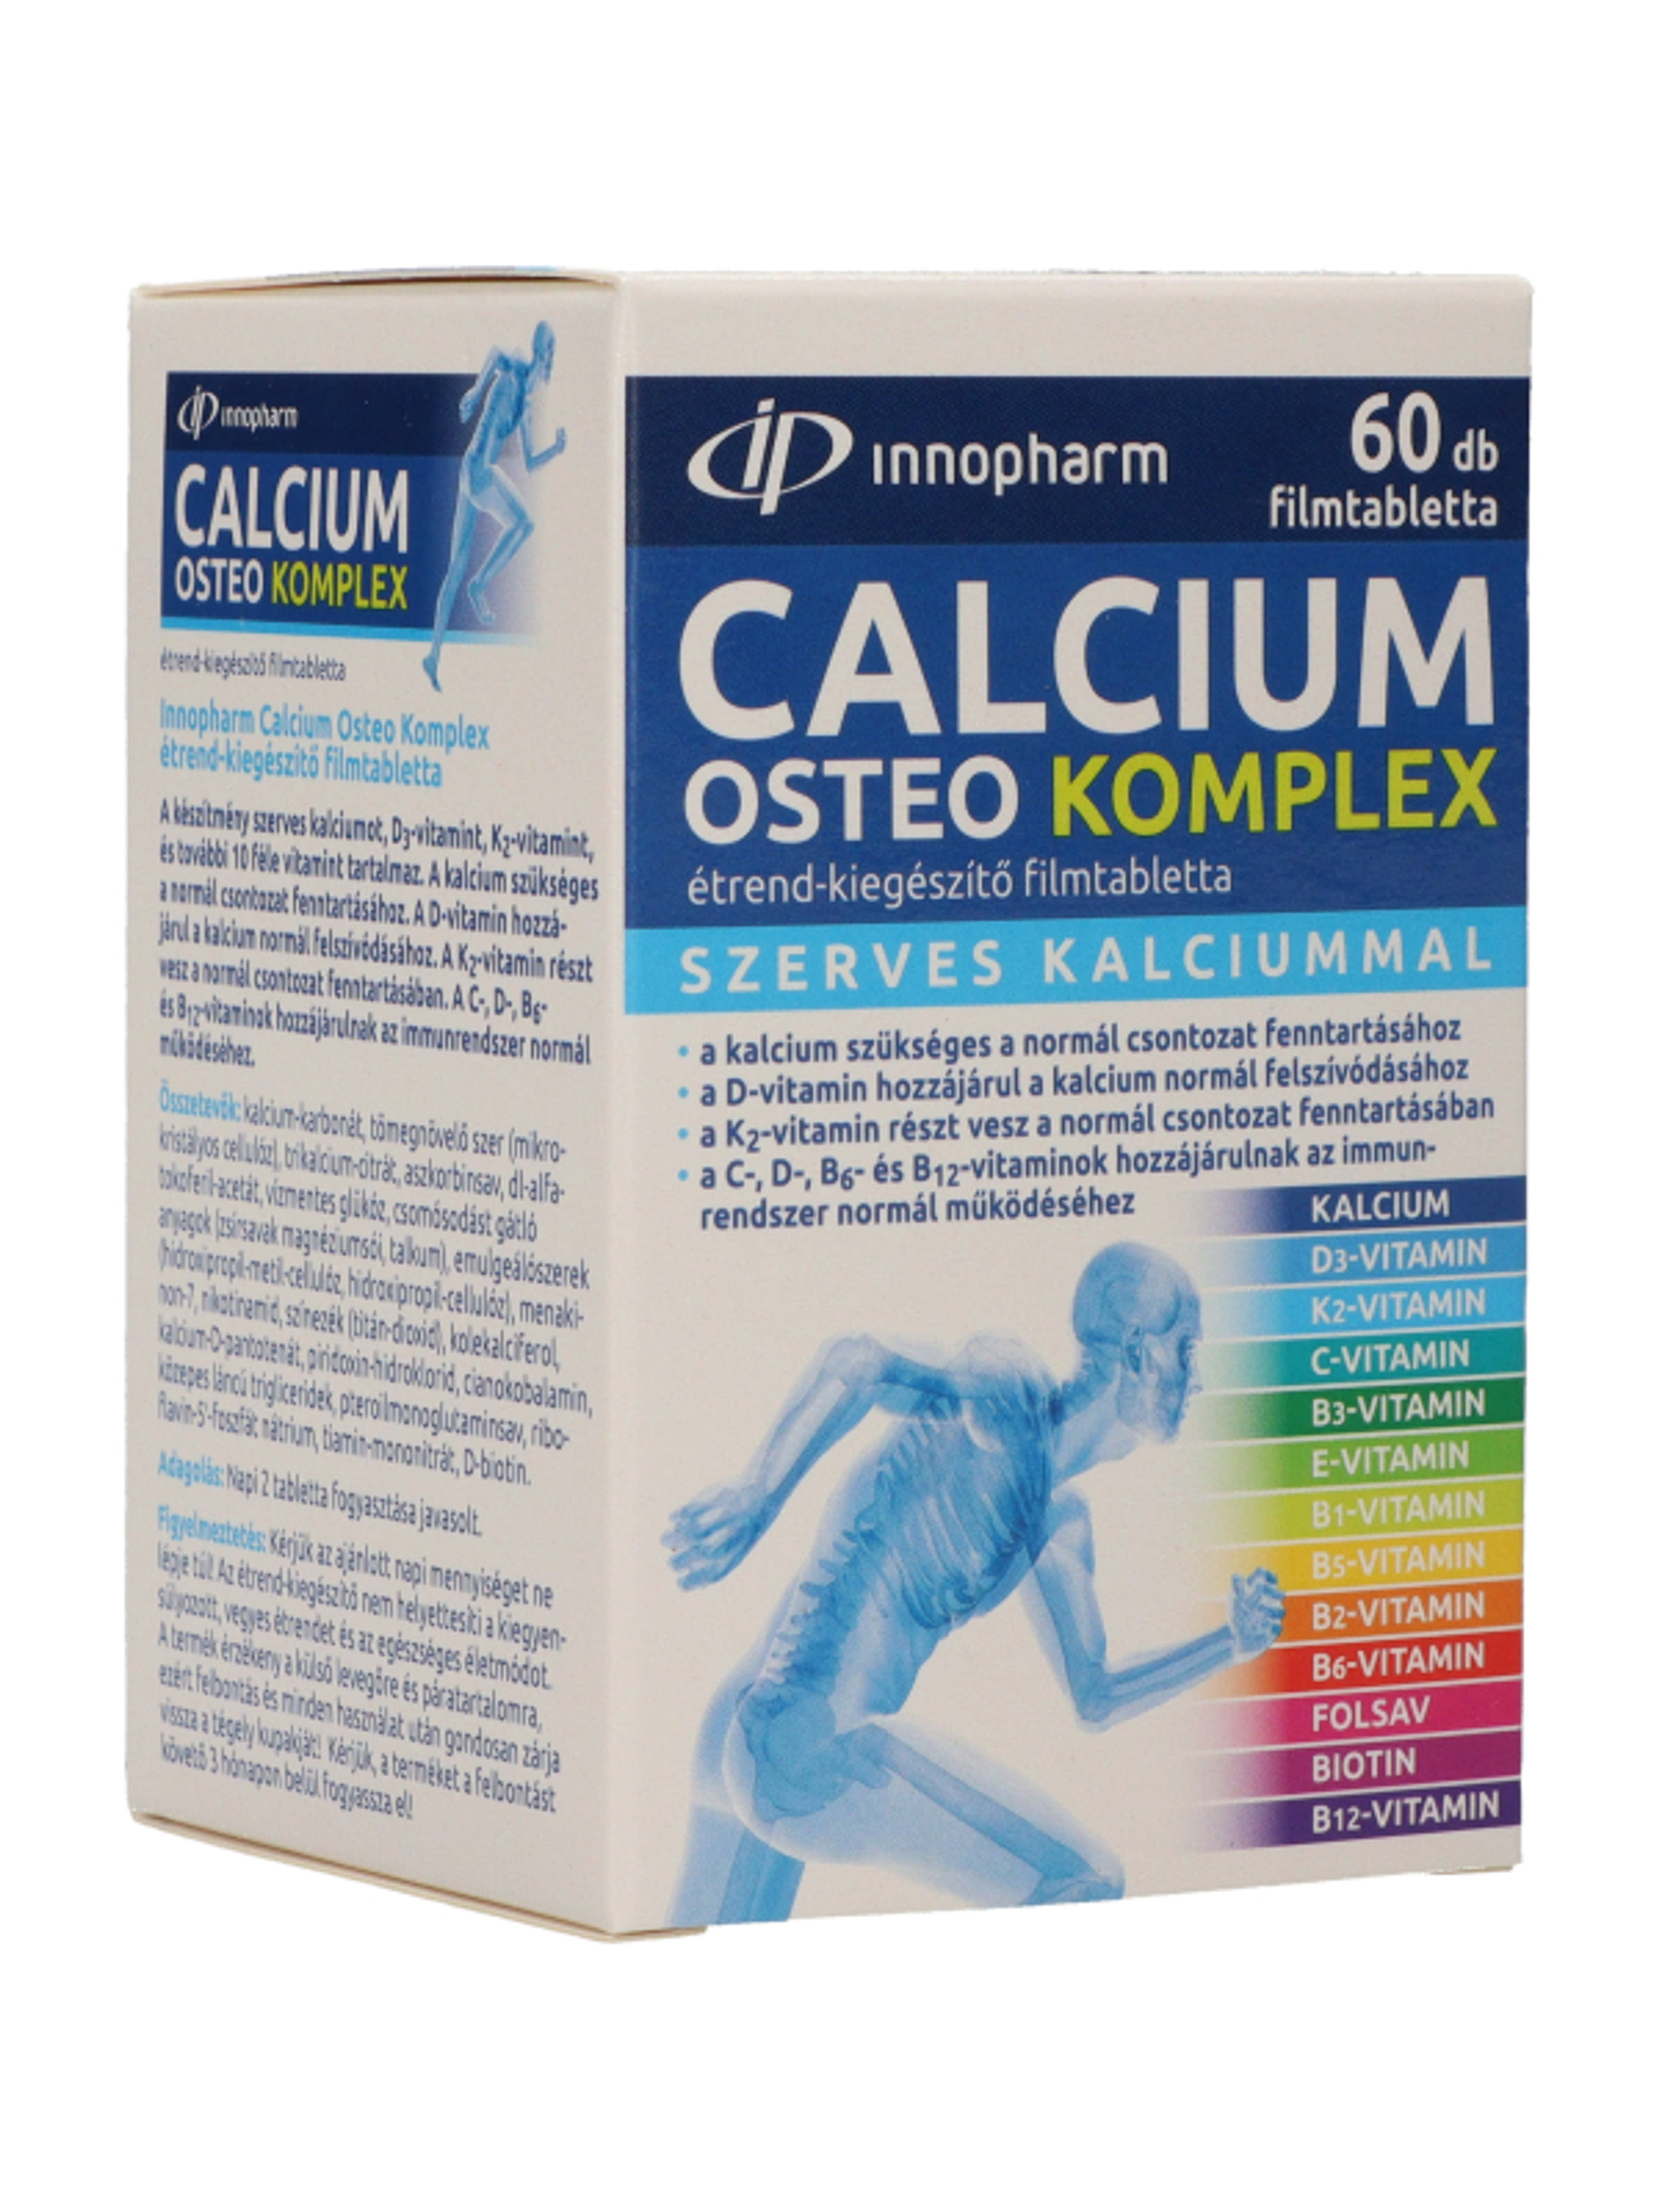 Innopharm Kalcium Osteo komplex étrendkiegészítő filmtabletta - 60 db-5